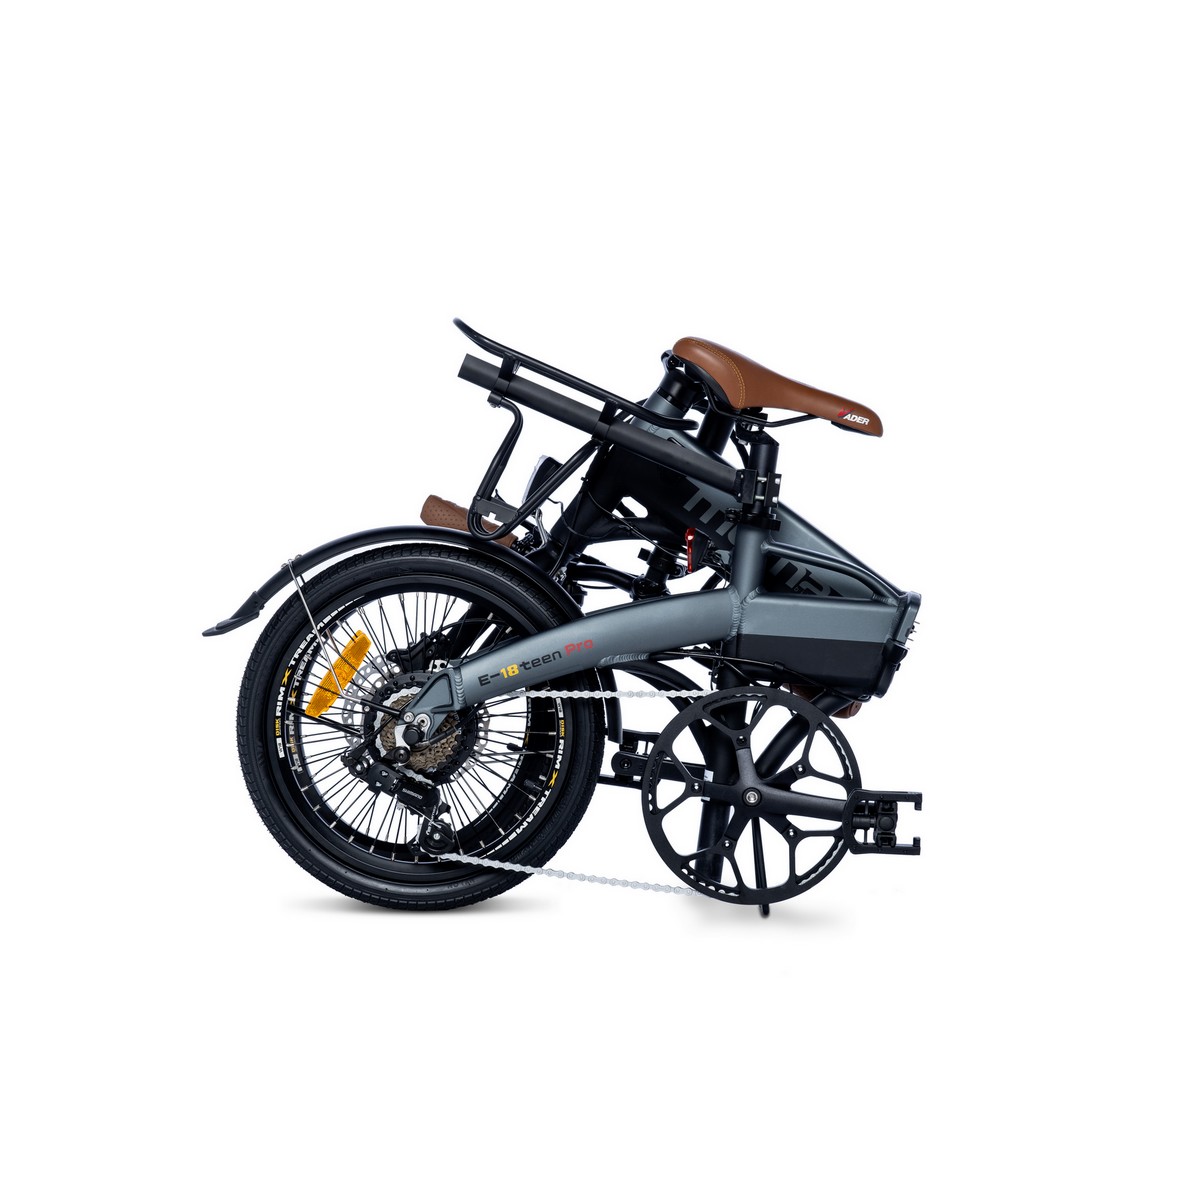 Bicicleta Electrica Plegable, Moma Bikes E18teen, Aluminio. Shimano 7v. Bat. Ion Litio 36v 9ah